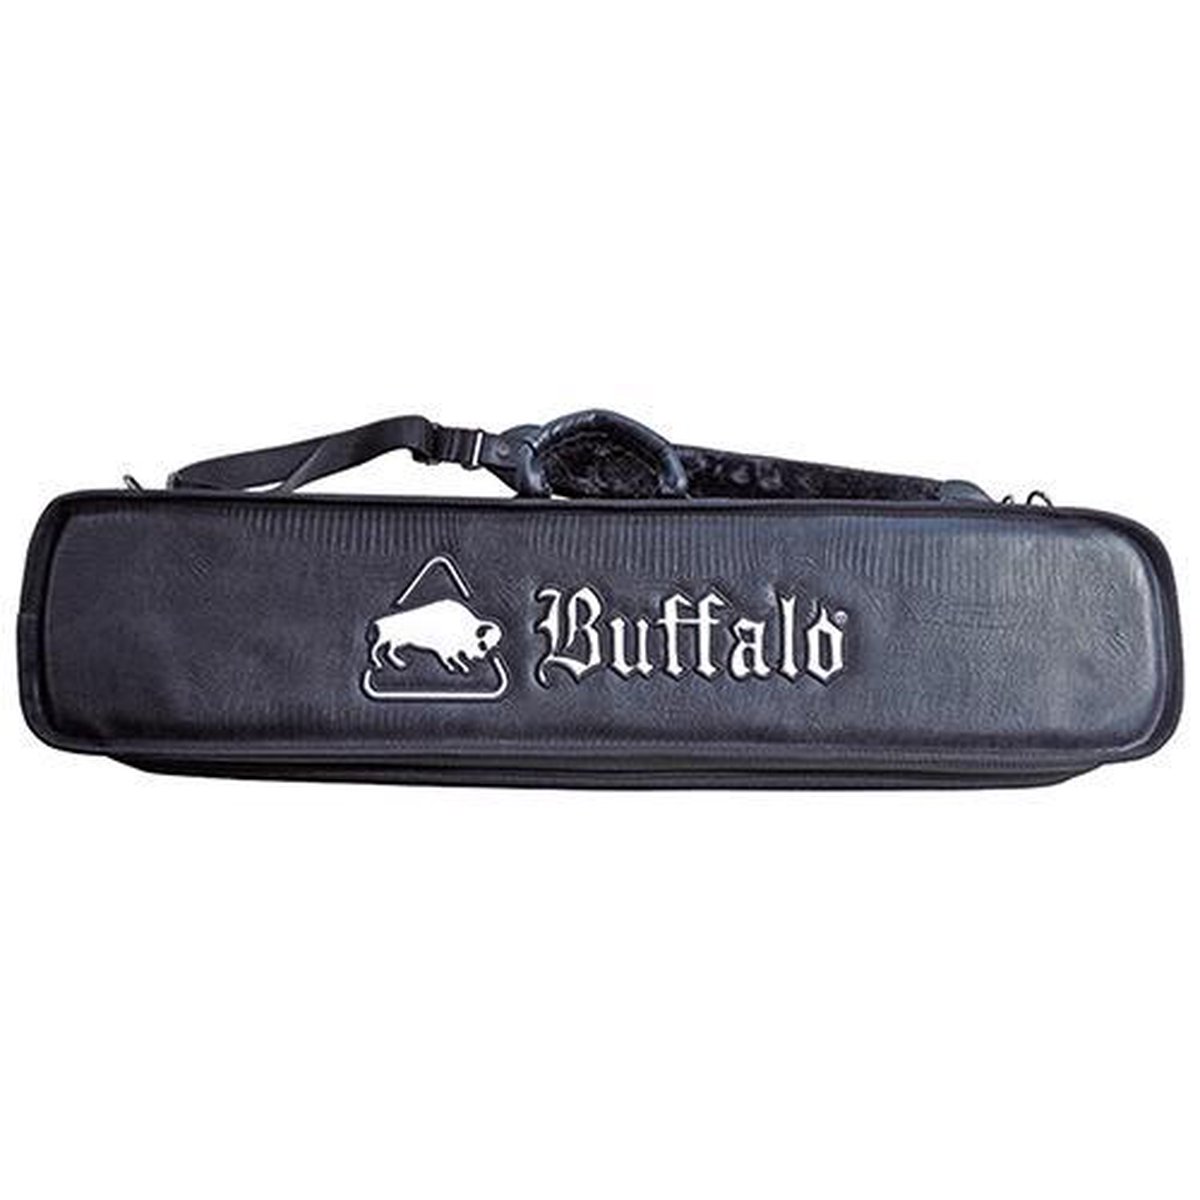 Buffalo keu tas De Luxe 6B/12BS zwart